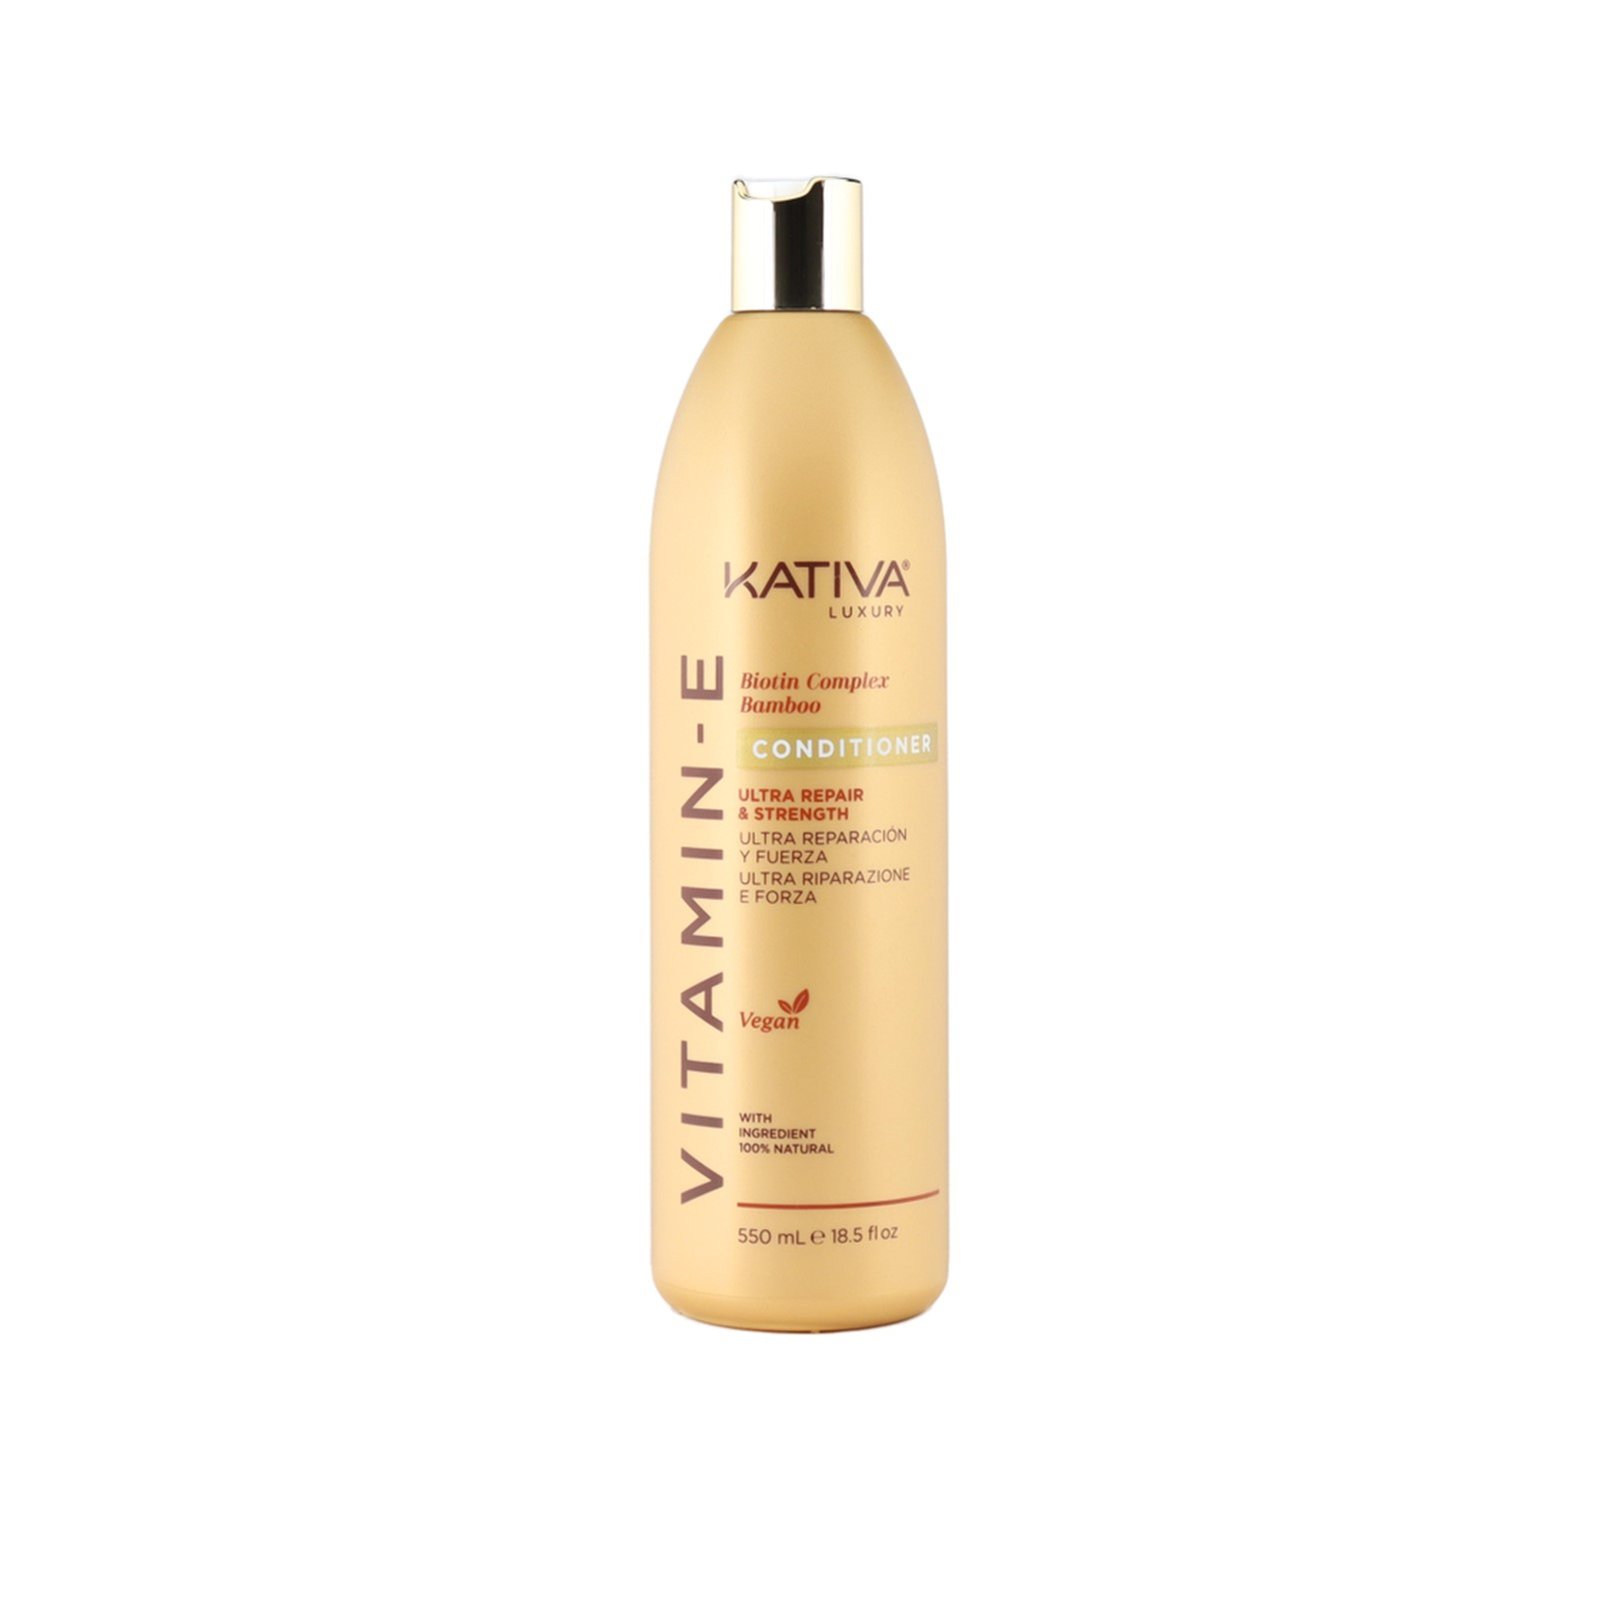 Kativa Luxury Vitamin-E Ultra Repair & Strength Conditioner 550ml (18.5 fl oz)